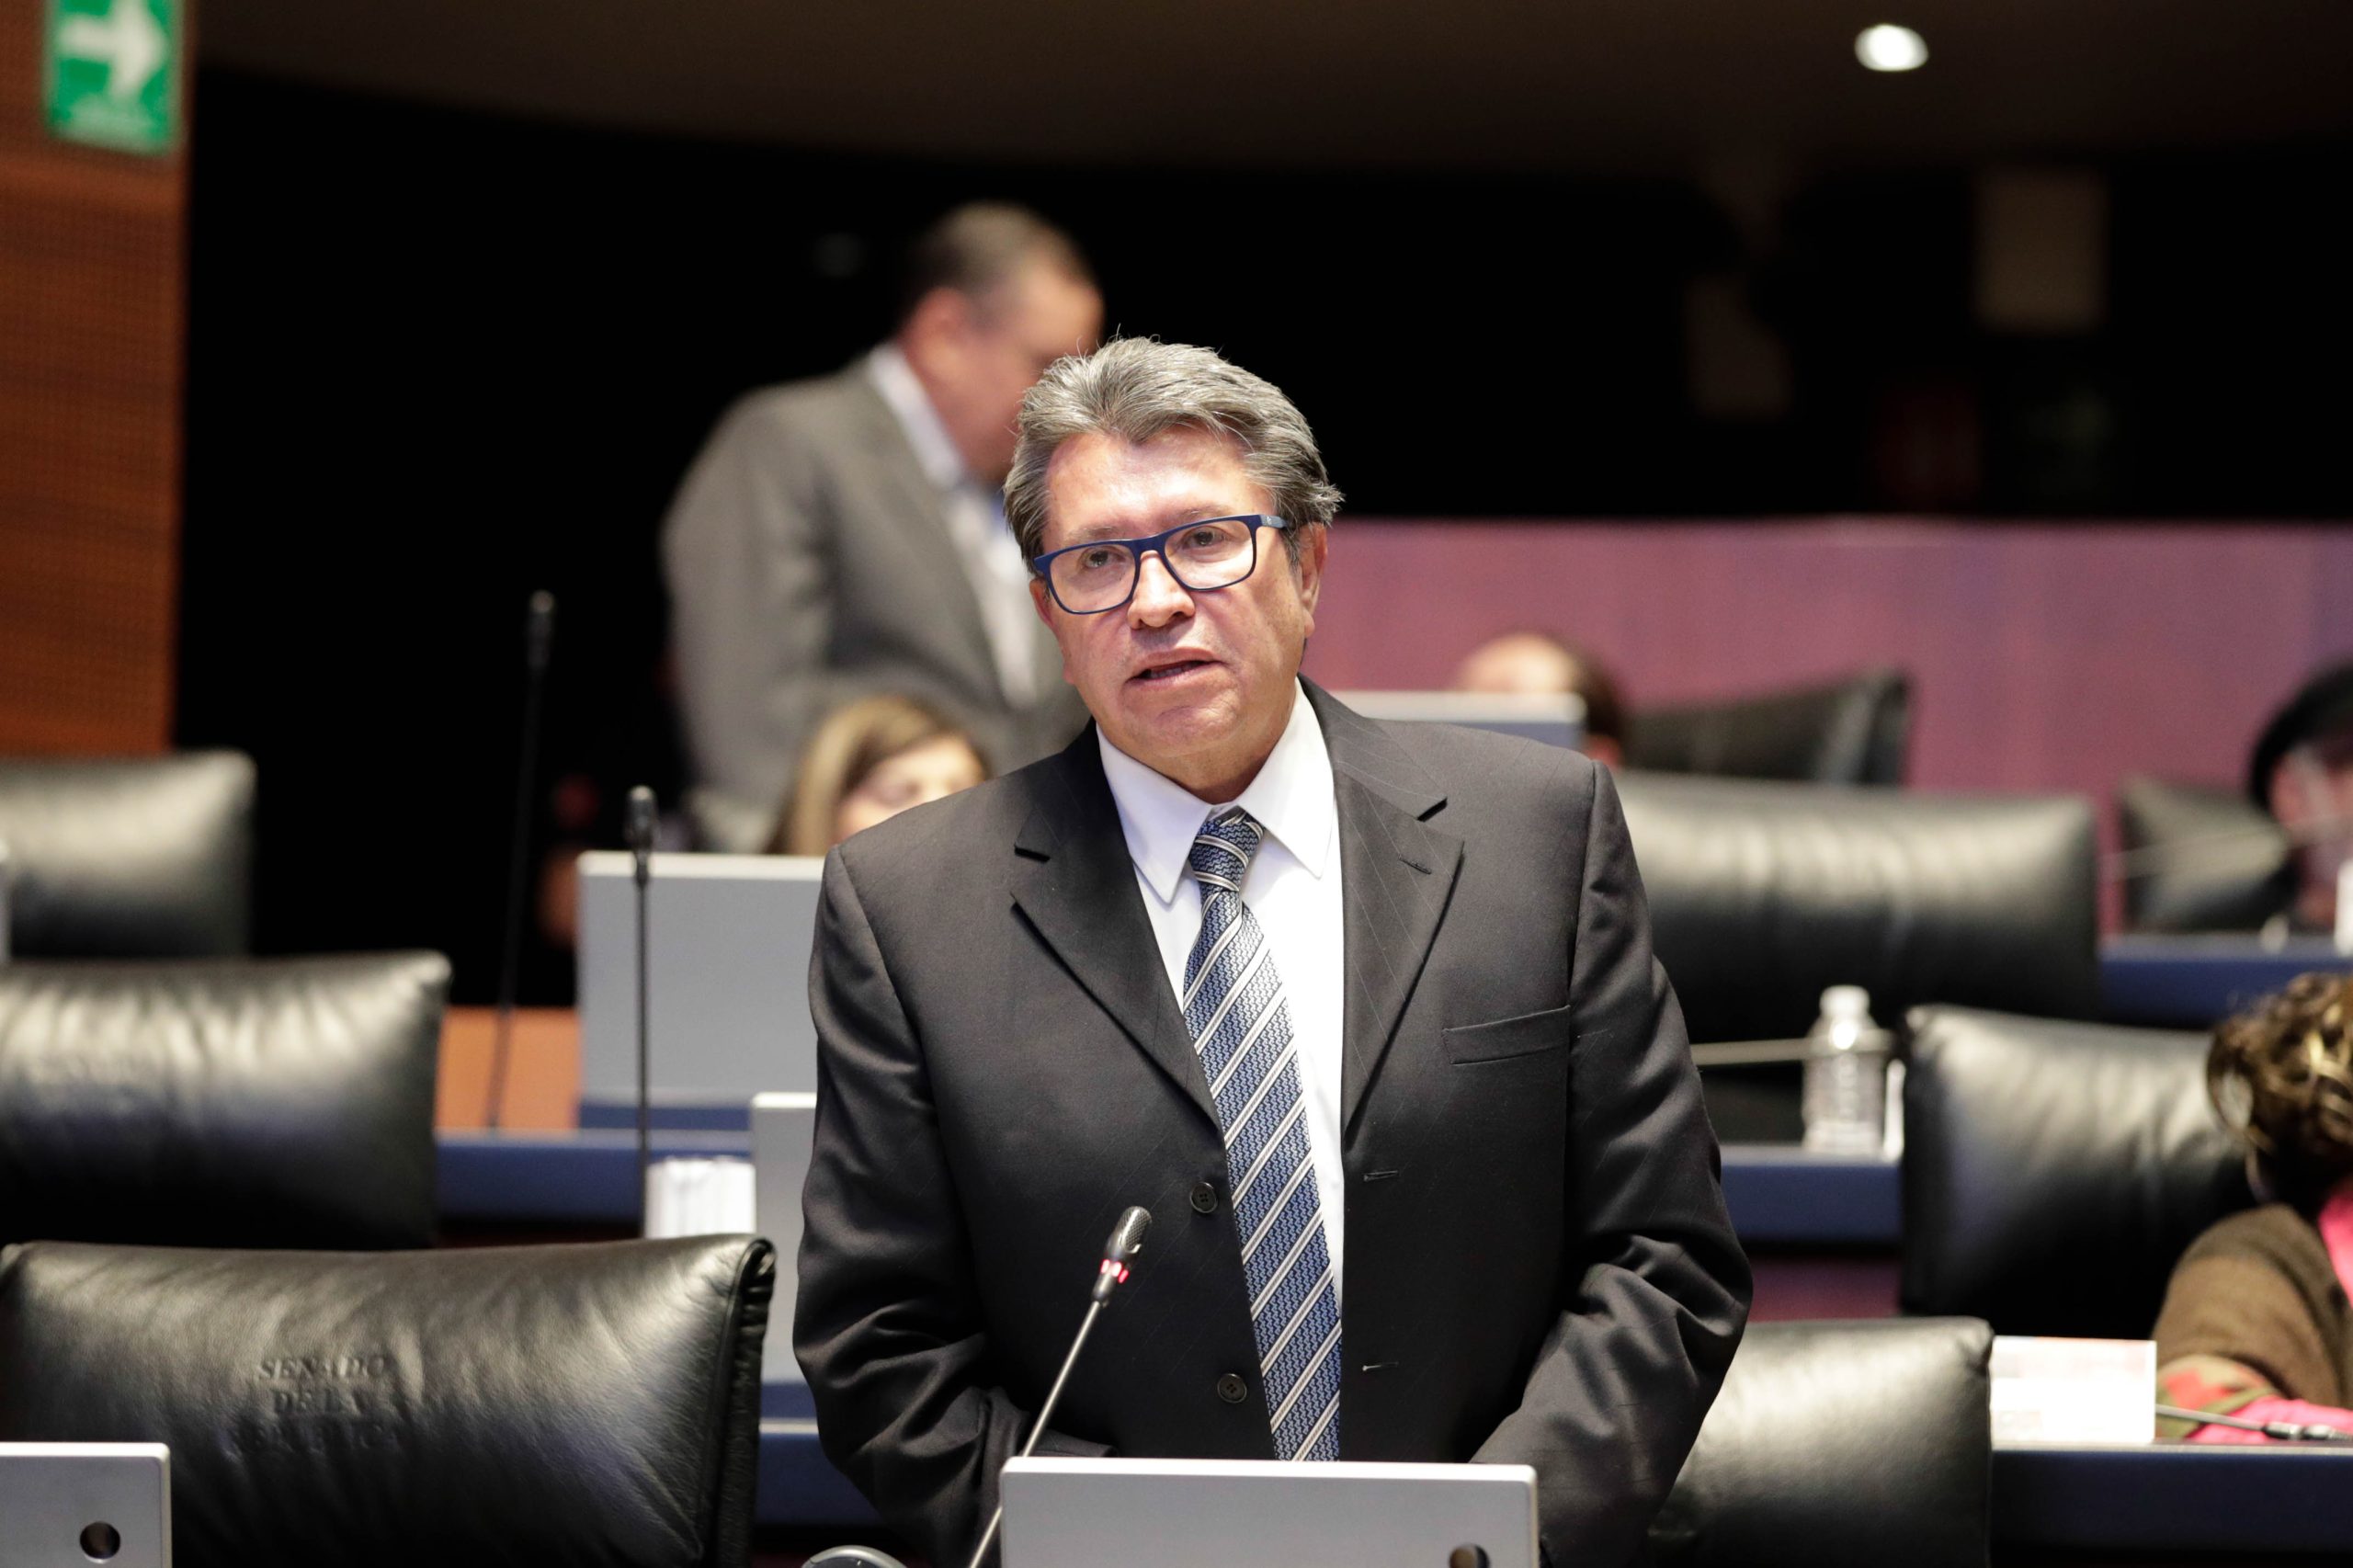 El Poder Judicial requiere de reformas profundas por el déficit de confianza ciudadana: Ricardo Monreal